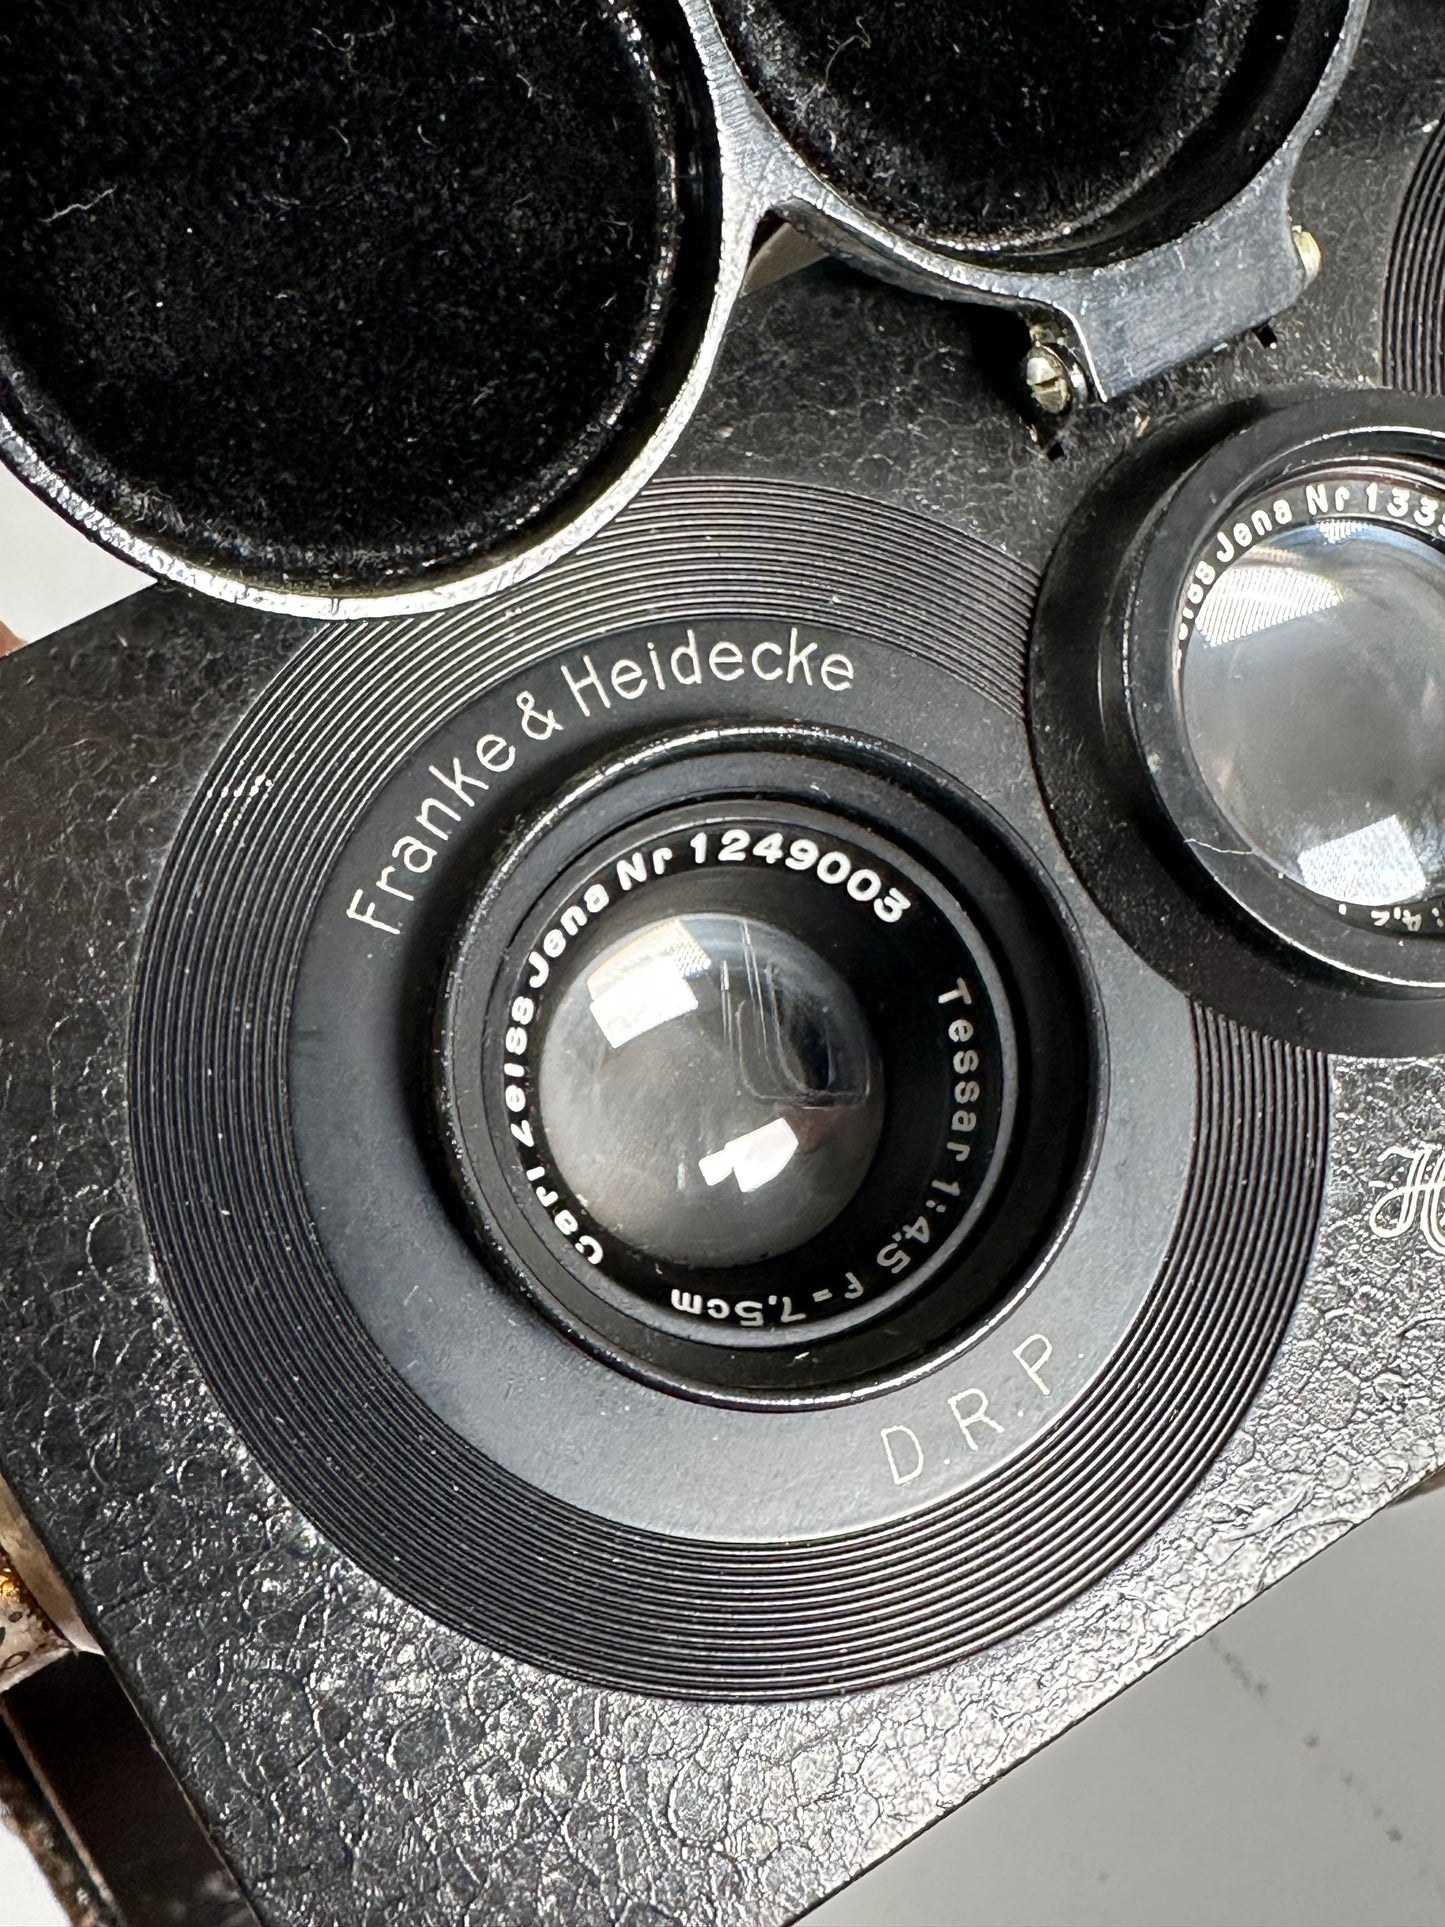 Rollei stereo Heidoscop 6x13cm w/ plate film holder tessar 75mm f4.5 lens